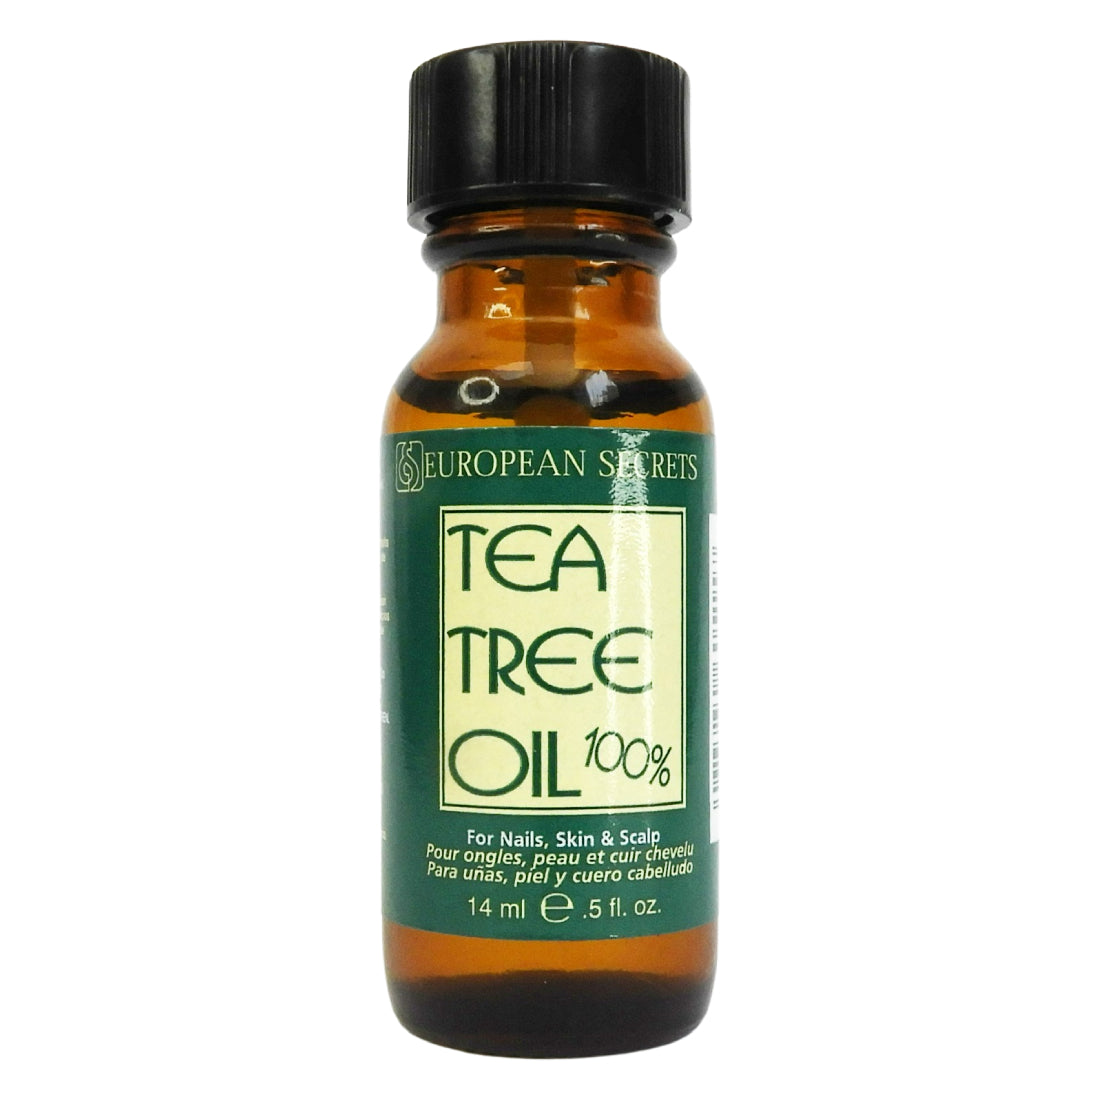 European Secrets Tea Tree Oil 100% - Para uñas, piel y cuero cabelludo